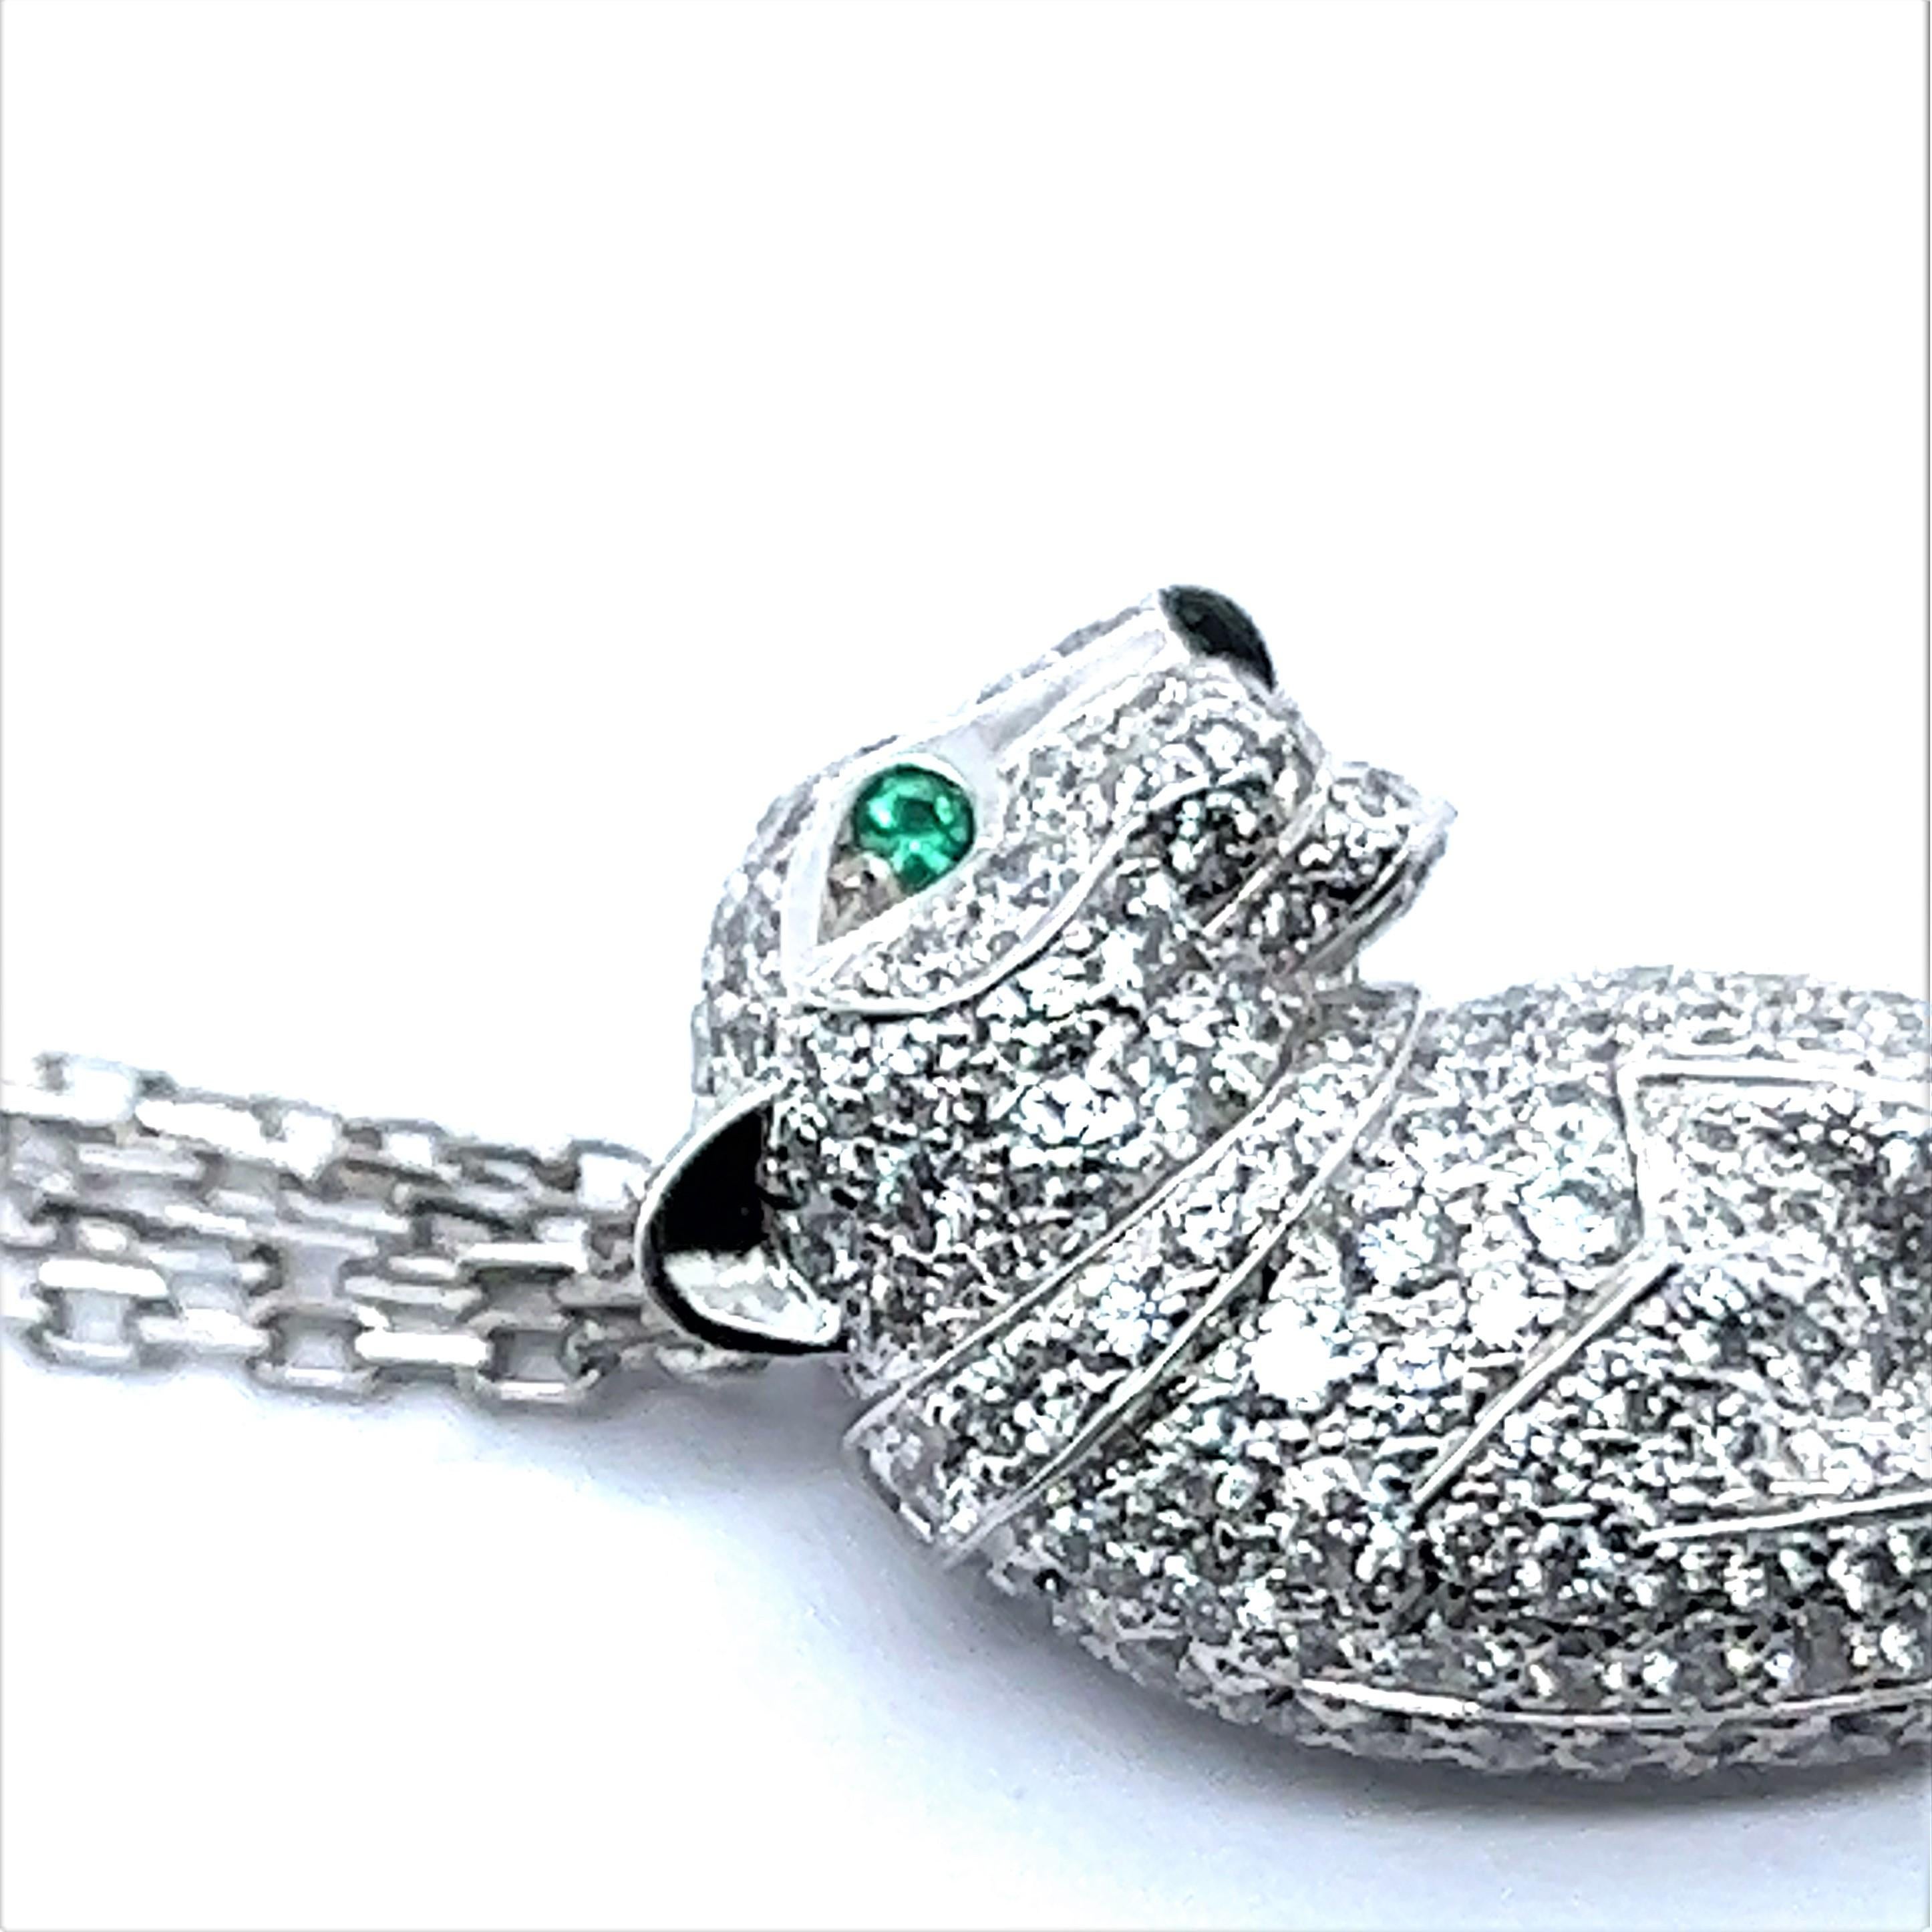 Brilliant Cut Panthère De Cartier Pendant Diamond Necklace in 18 Karat White Gold